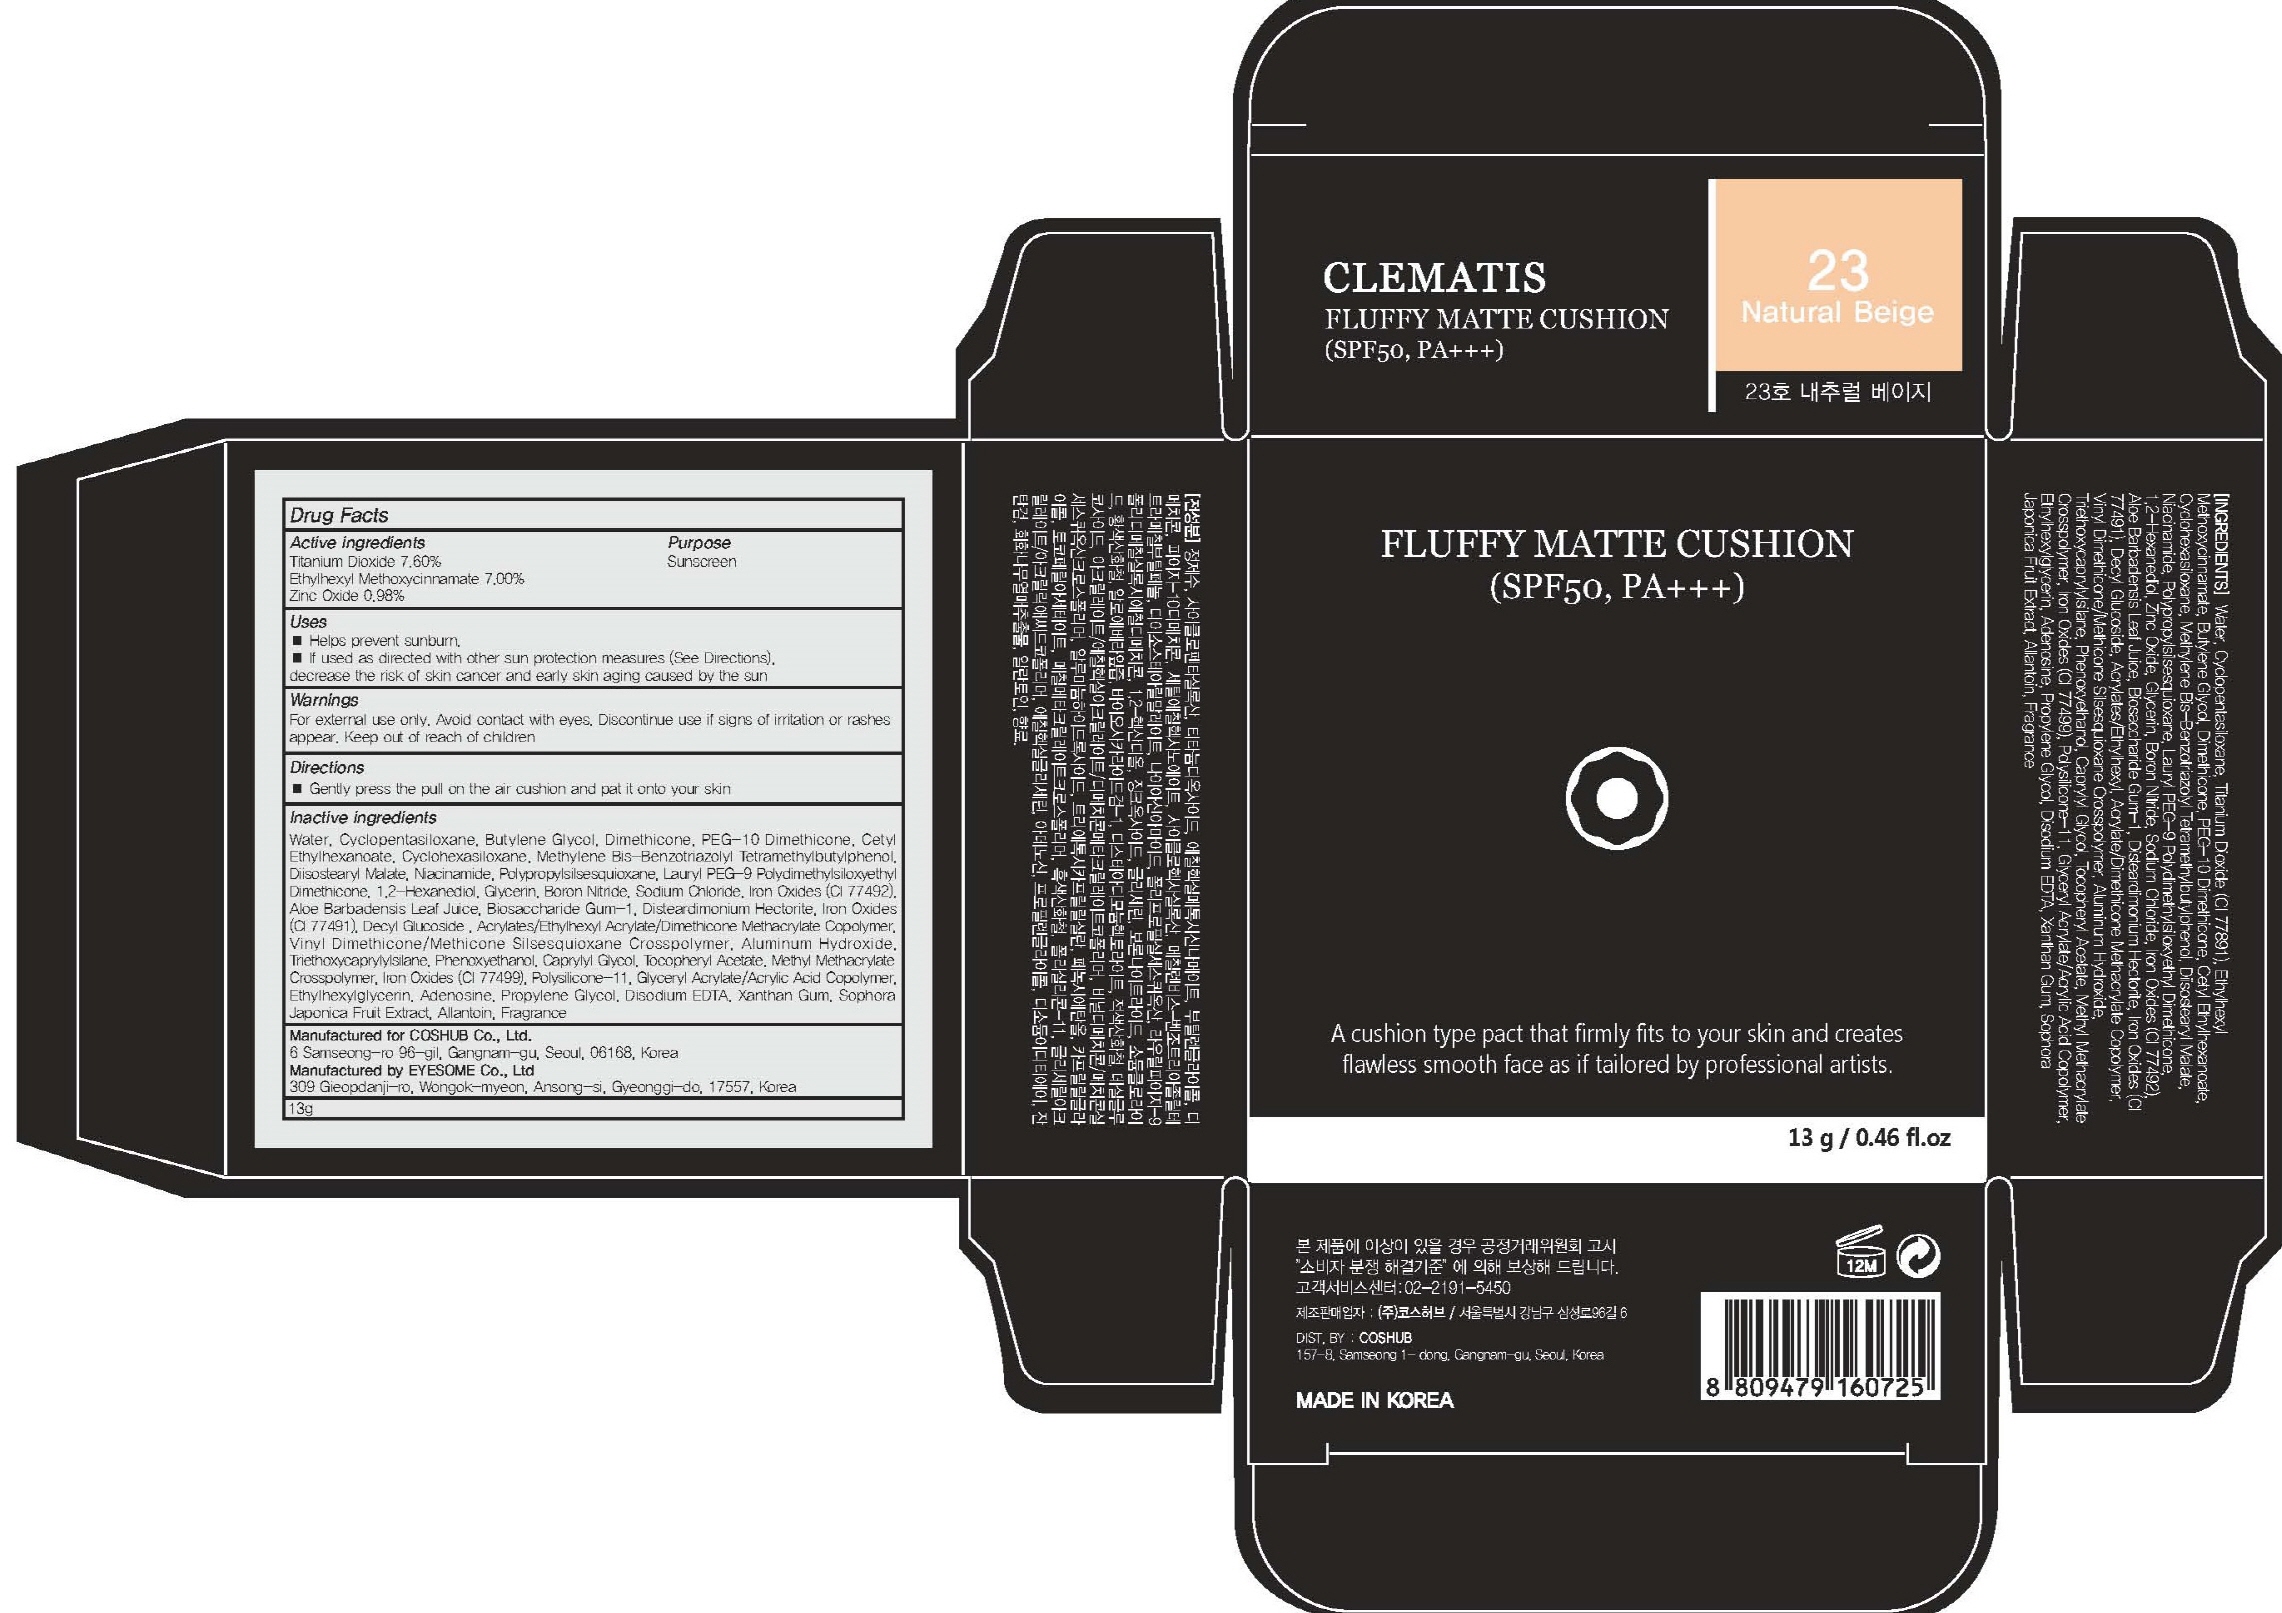 Clematis Fluffy Matte Cushion 23 Natural Beige | Titanium Dioxide, Octinoxate, Zinc Oxide Powder Breastfeeding